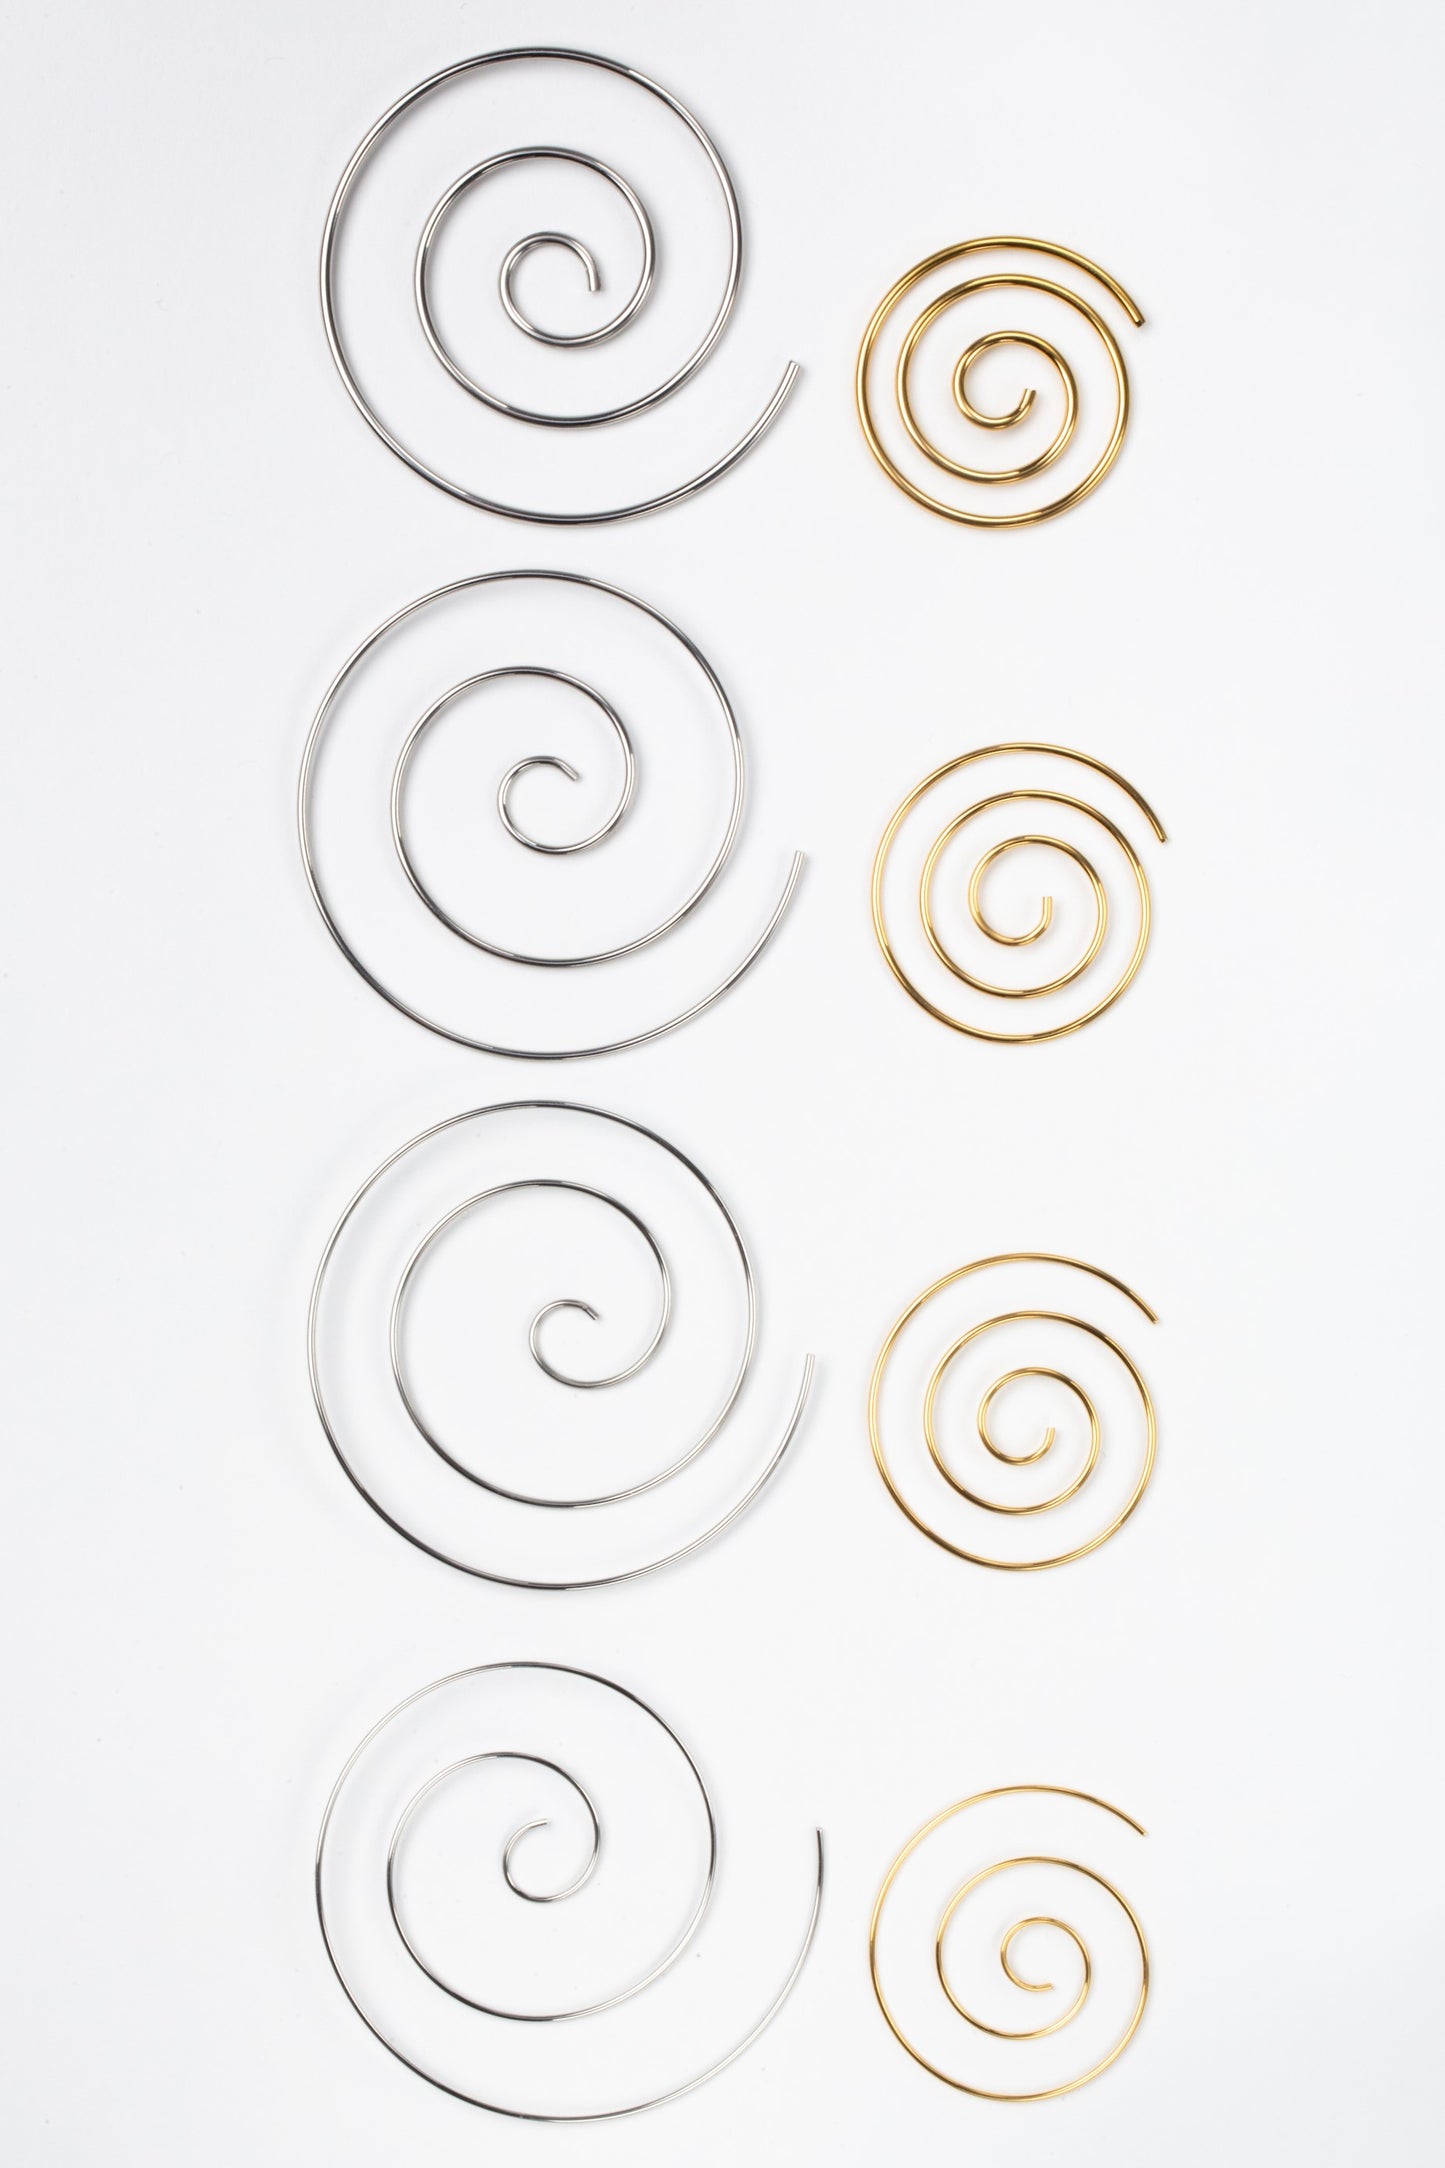 Large Spiral Coiled Hoop Earrings - Stainless Steel - Pair